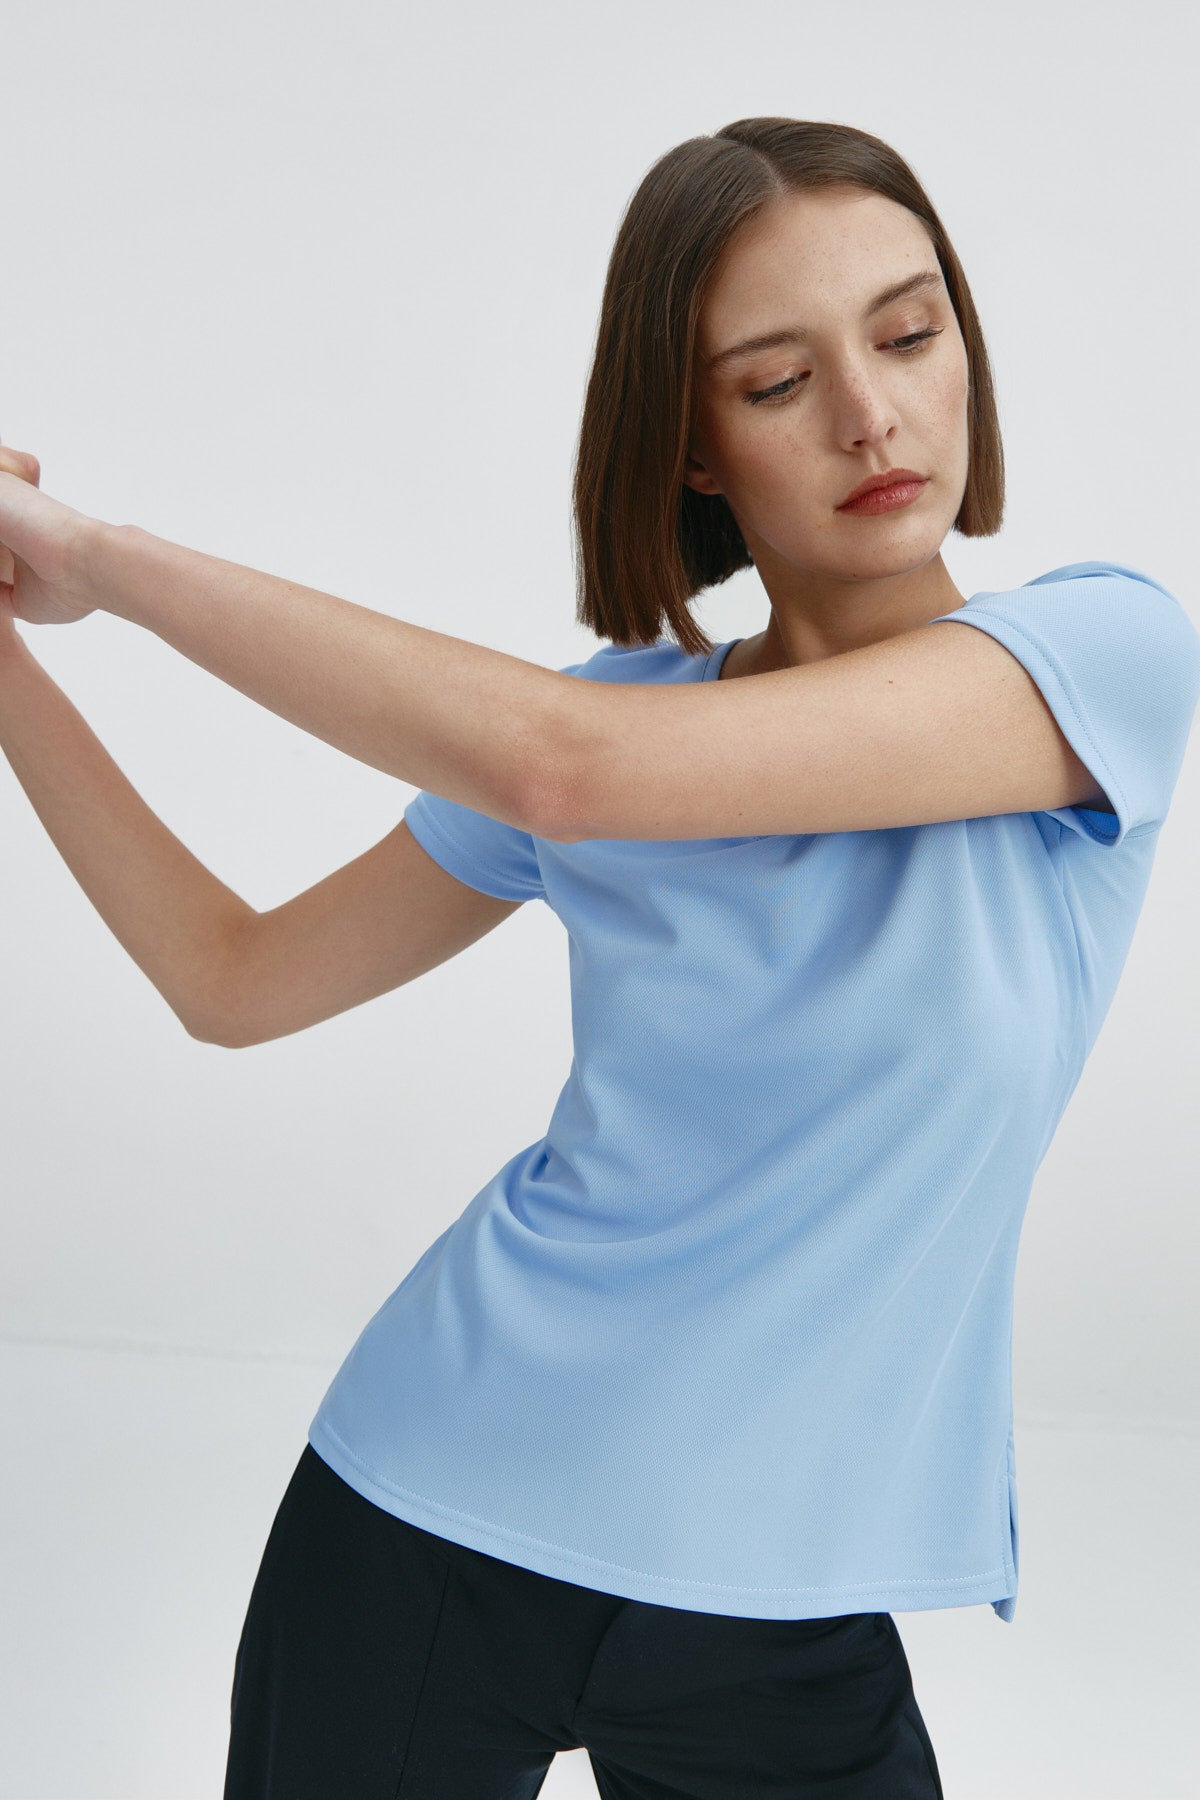 Top para mujer sin mangas con escote pico en color azul niebla, básico y perfecto para el verano. Foto flexibilidad